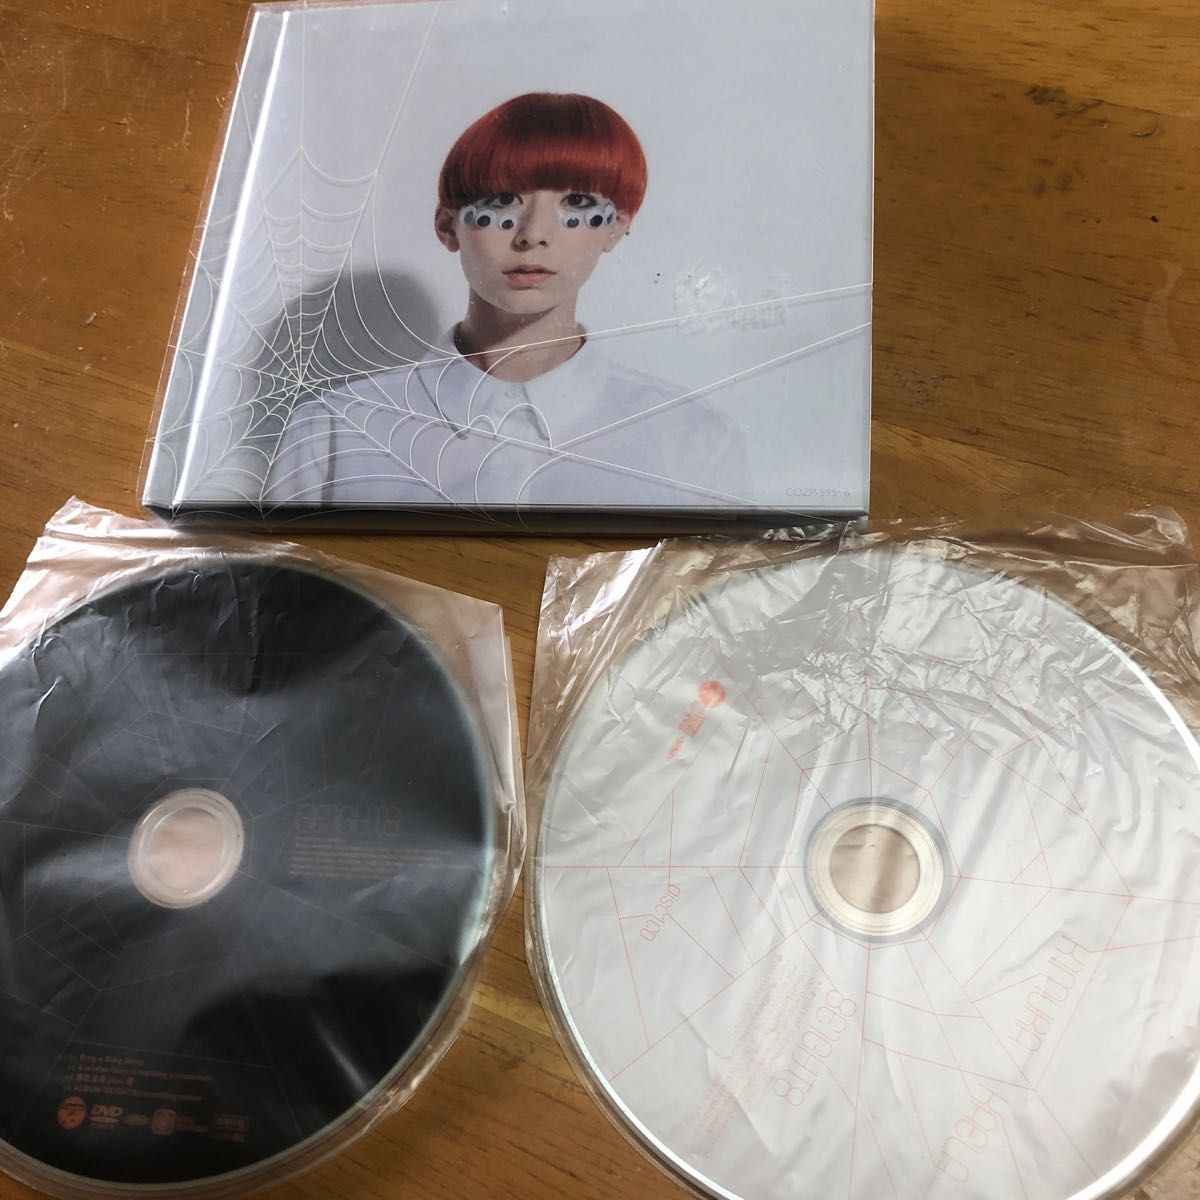 木村カエラ CD+DVD [8EIGHT8] 11/10/12発売 オリコン加盟店 初回盤